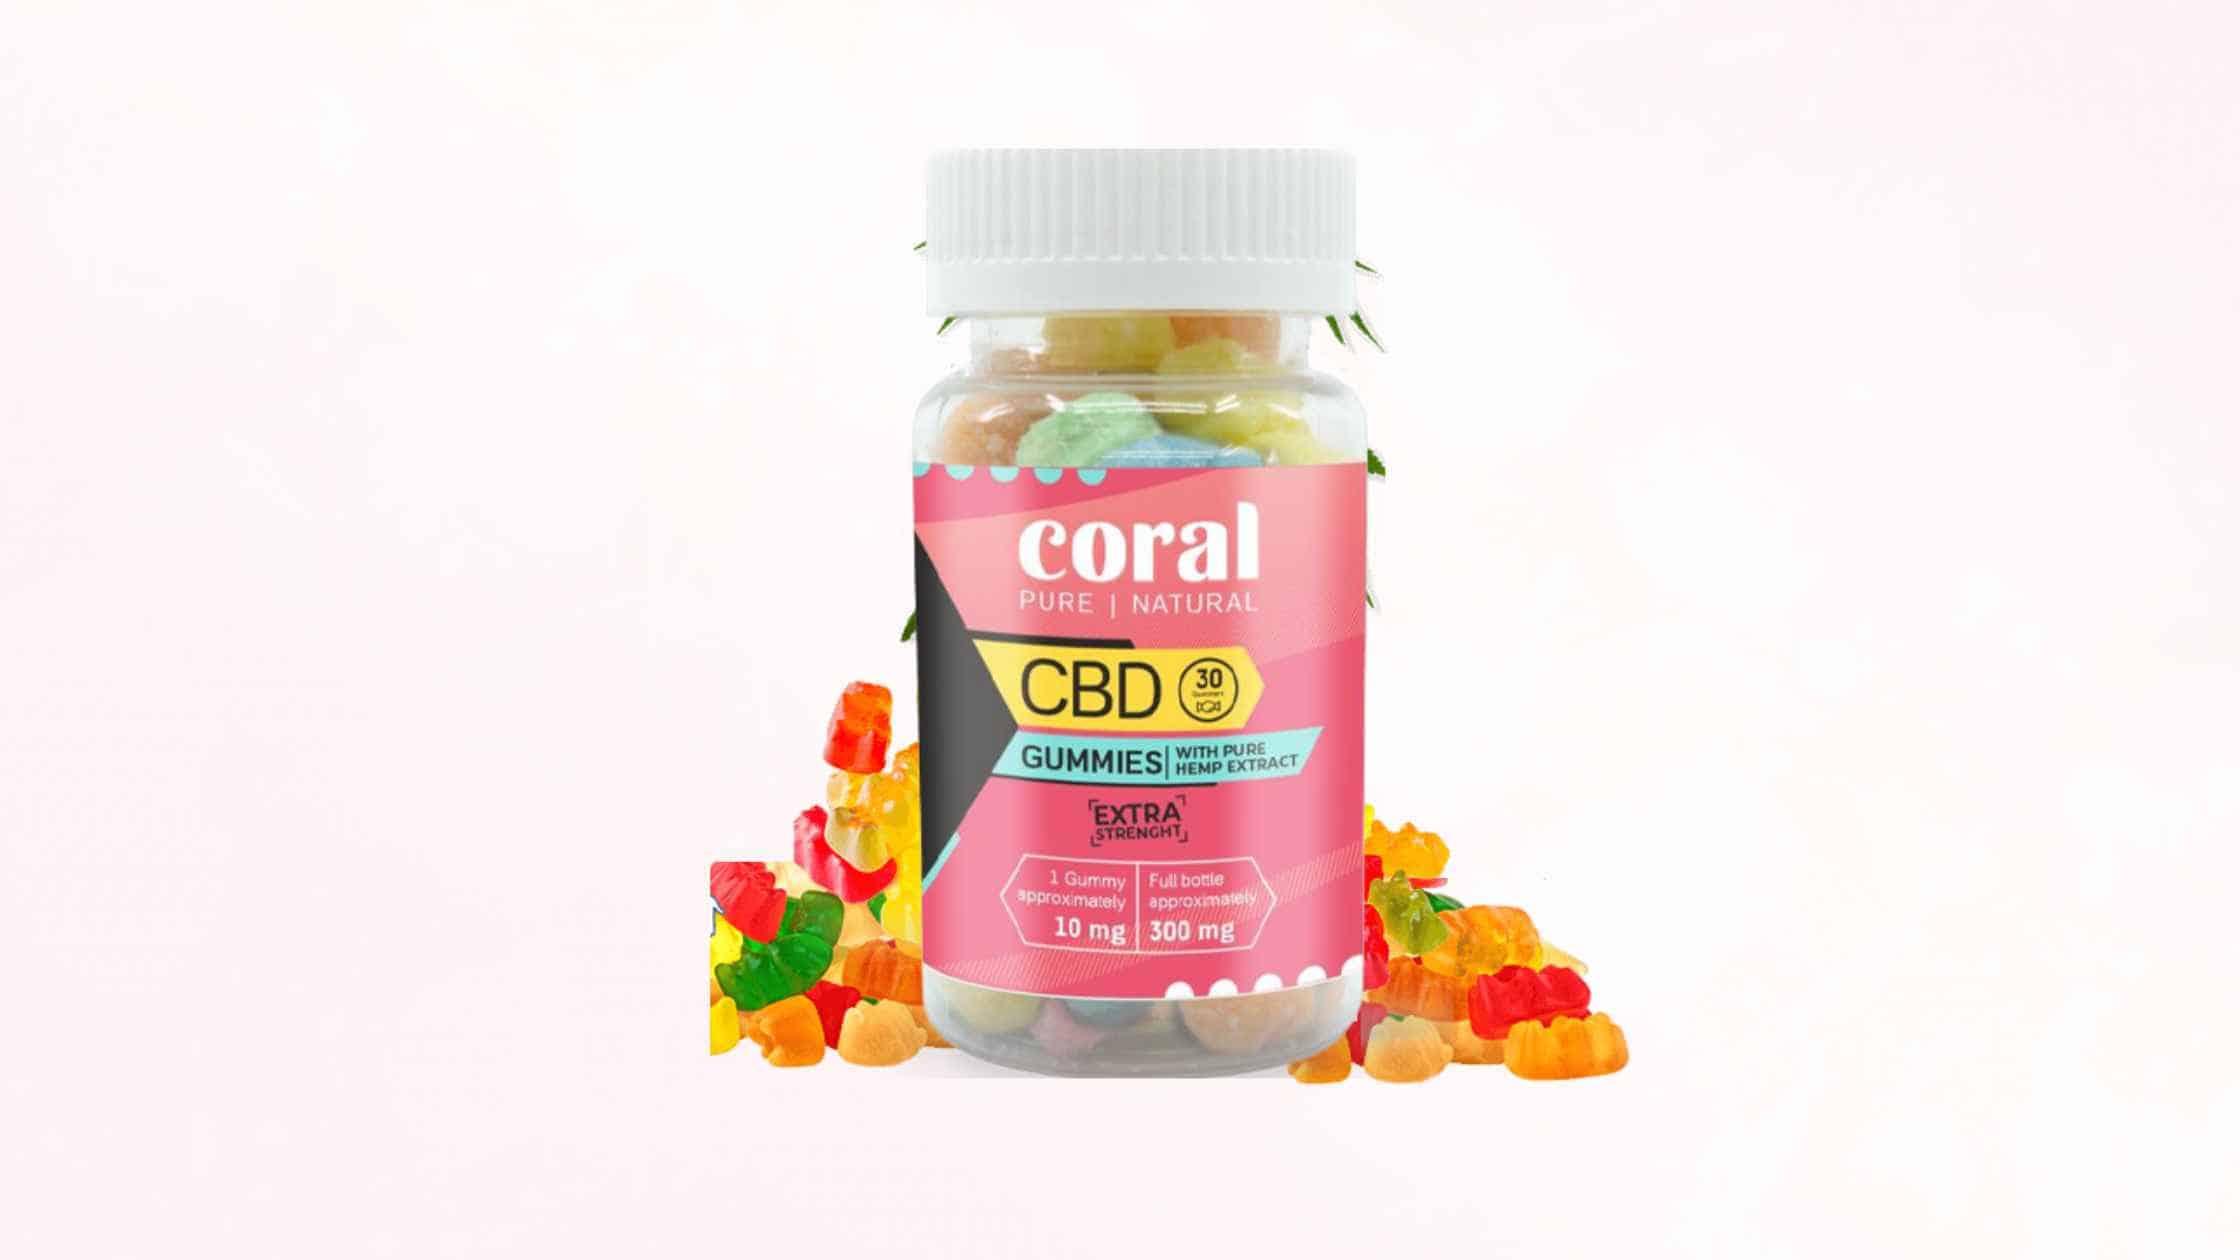 Coral CBD Gummies Supplement